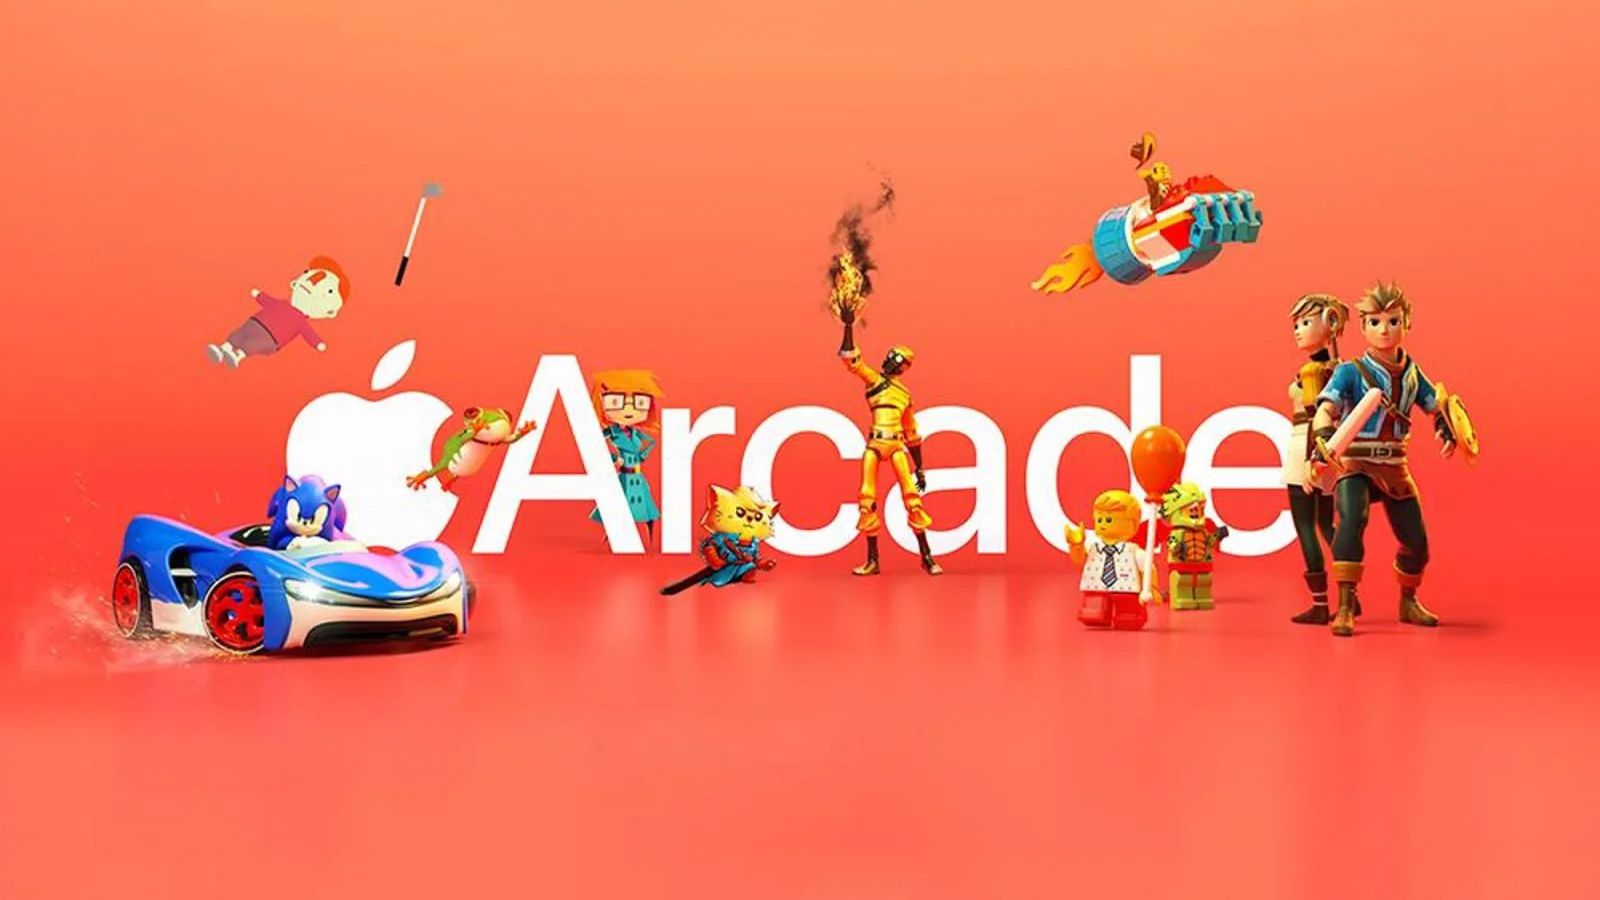 Каталог Apple Arcade теперь насчитывает более 200 игр